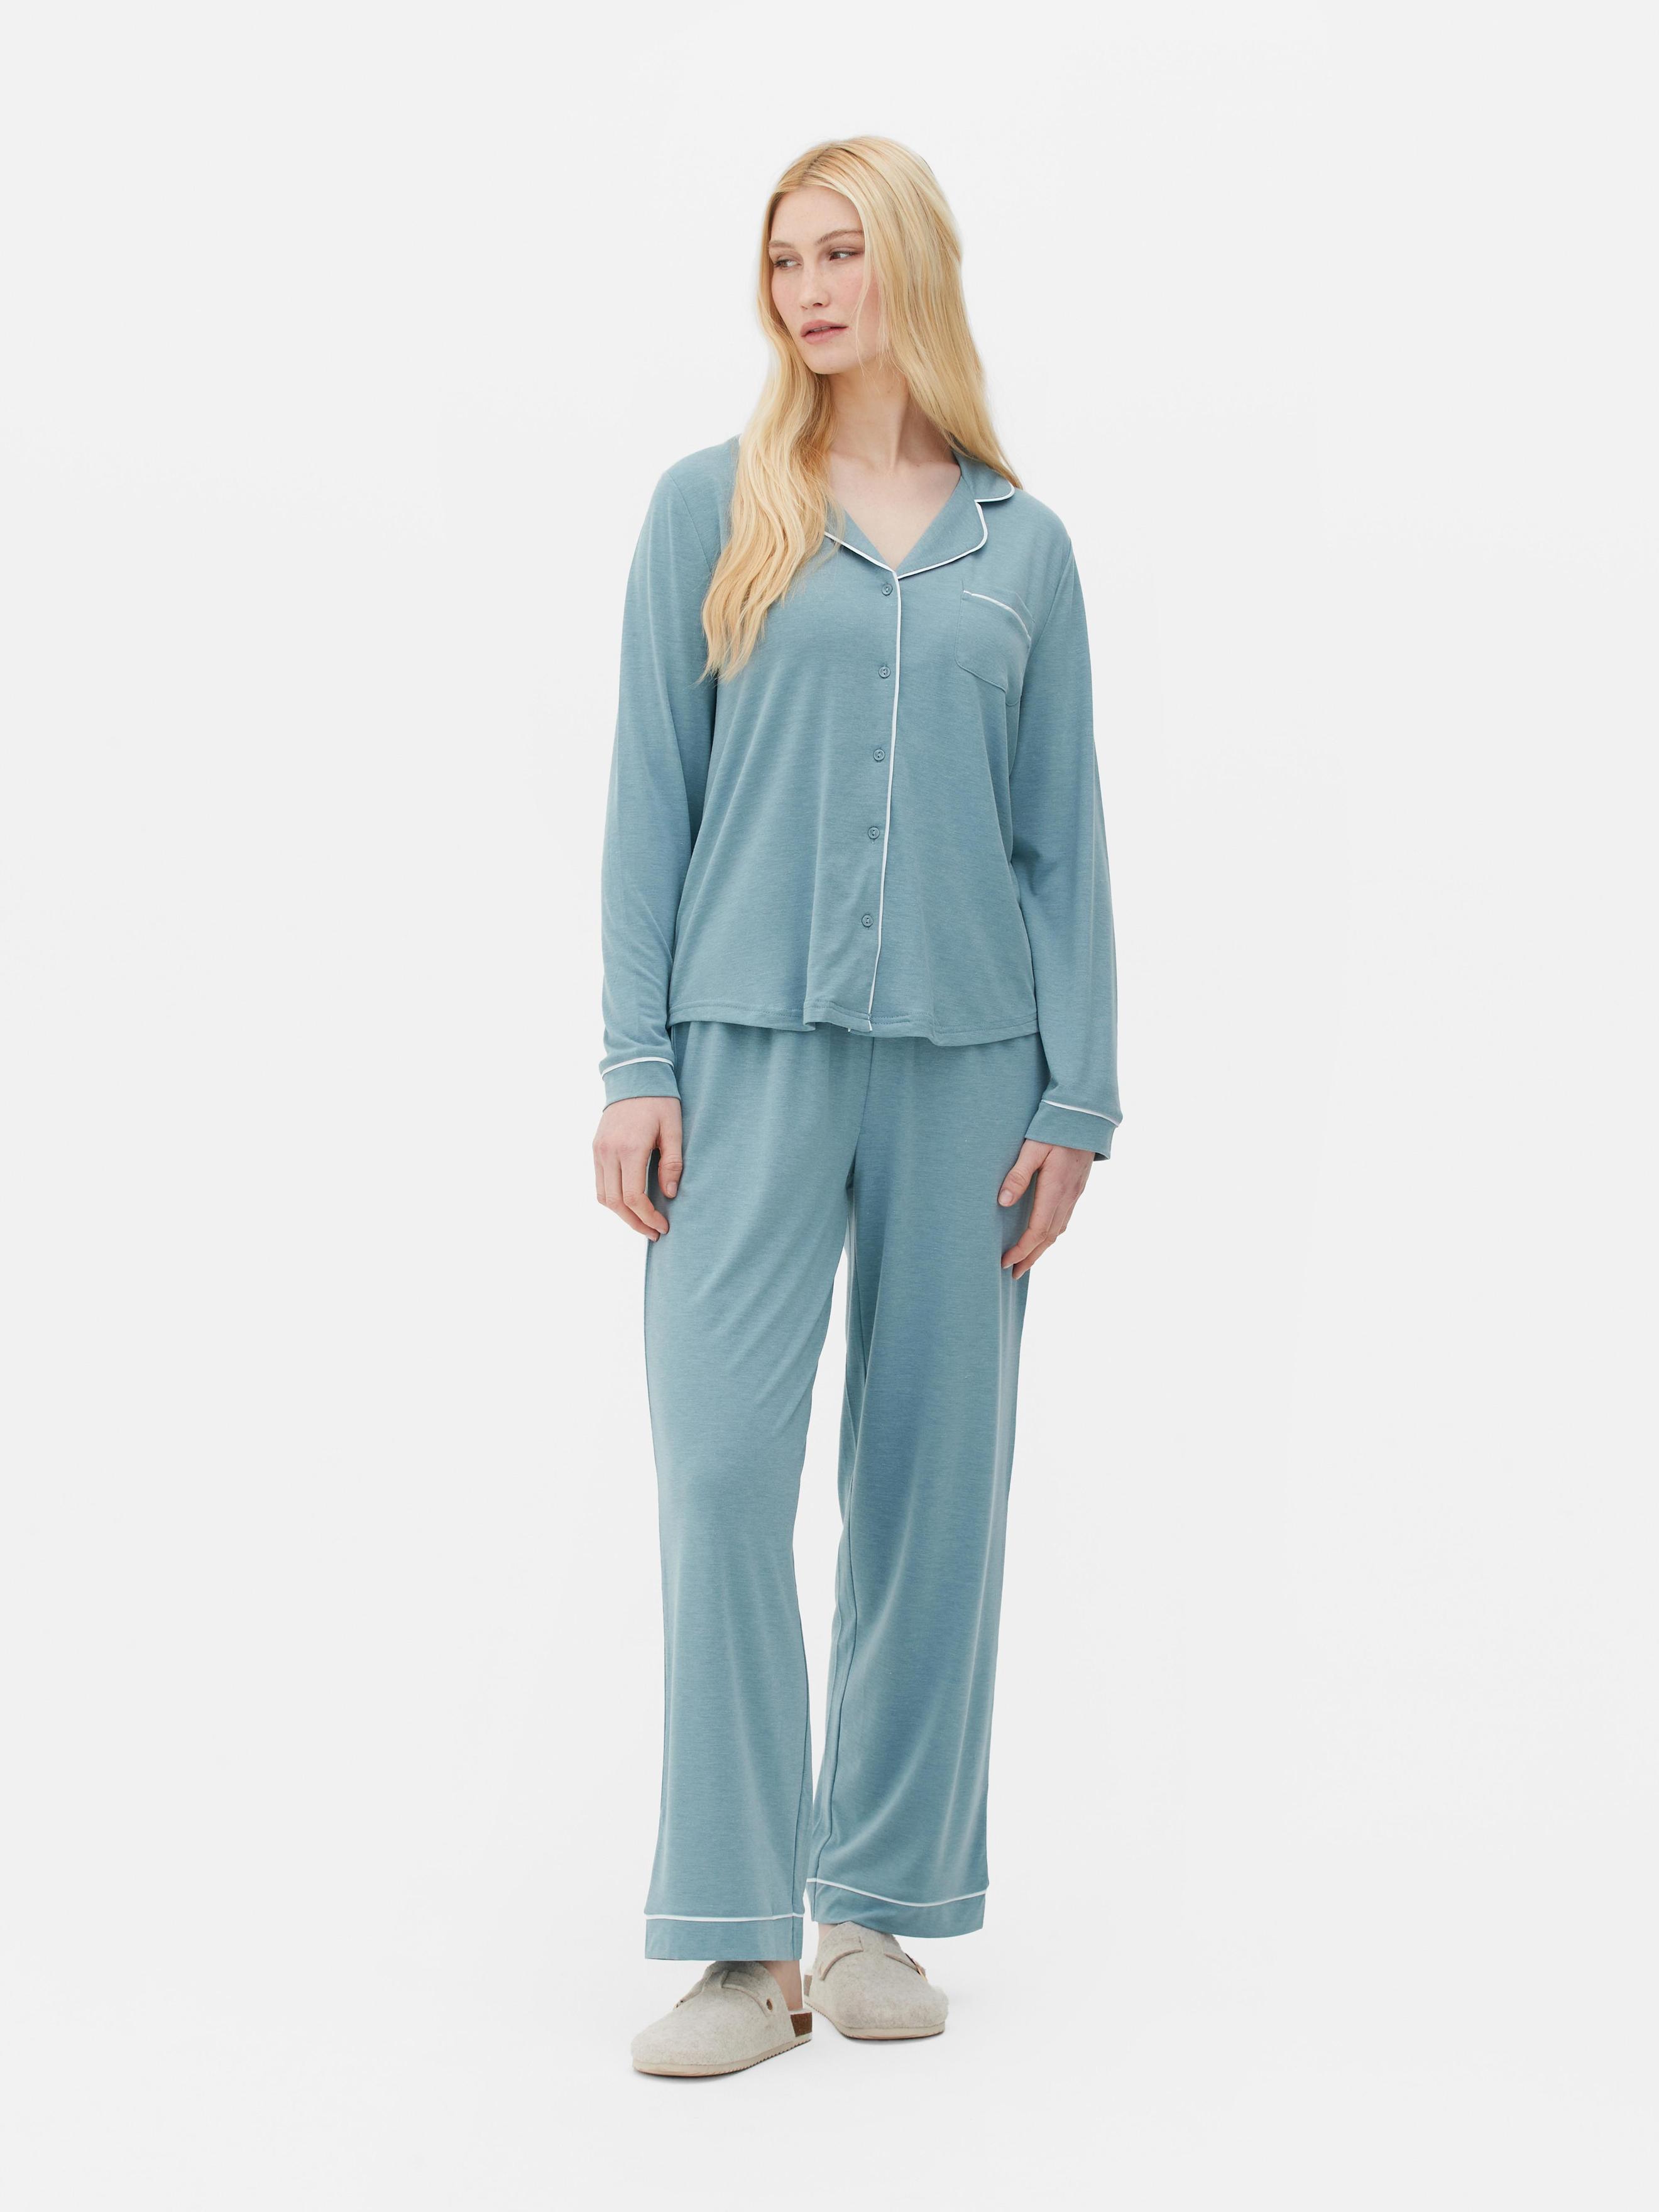 Jersey-Schlafanzug im Boyfriend-Look für 17€ in Primark